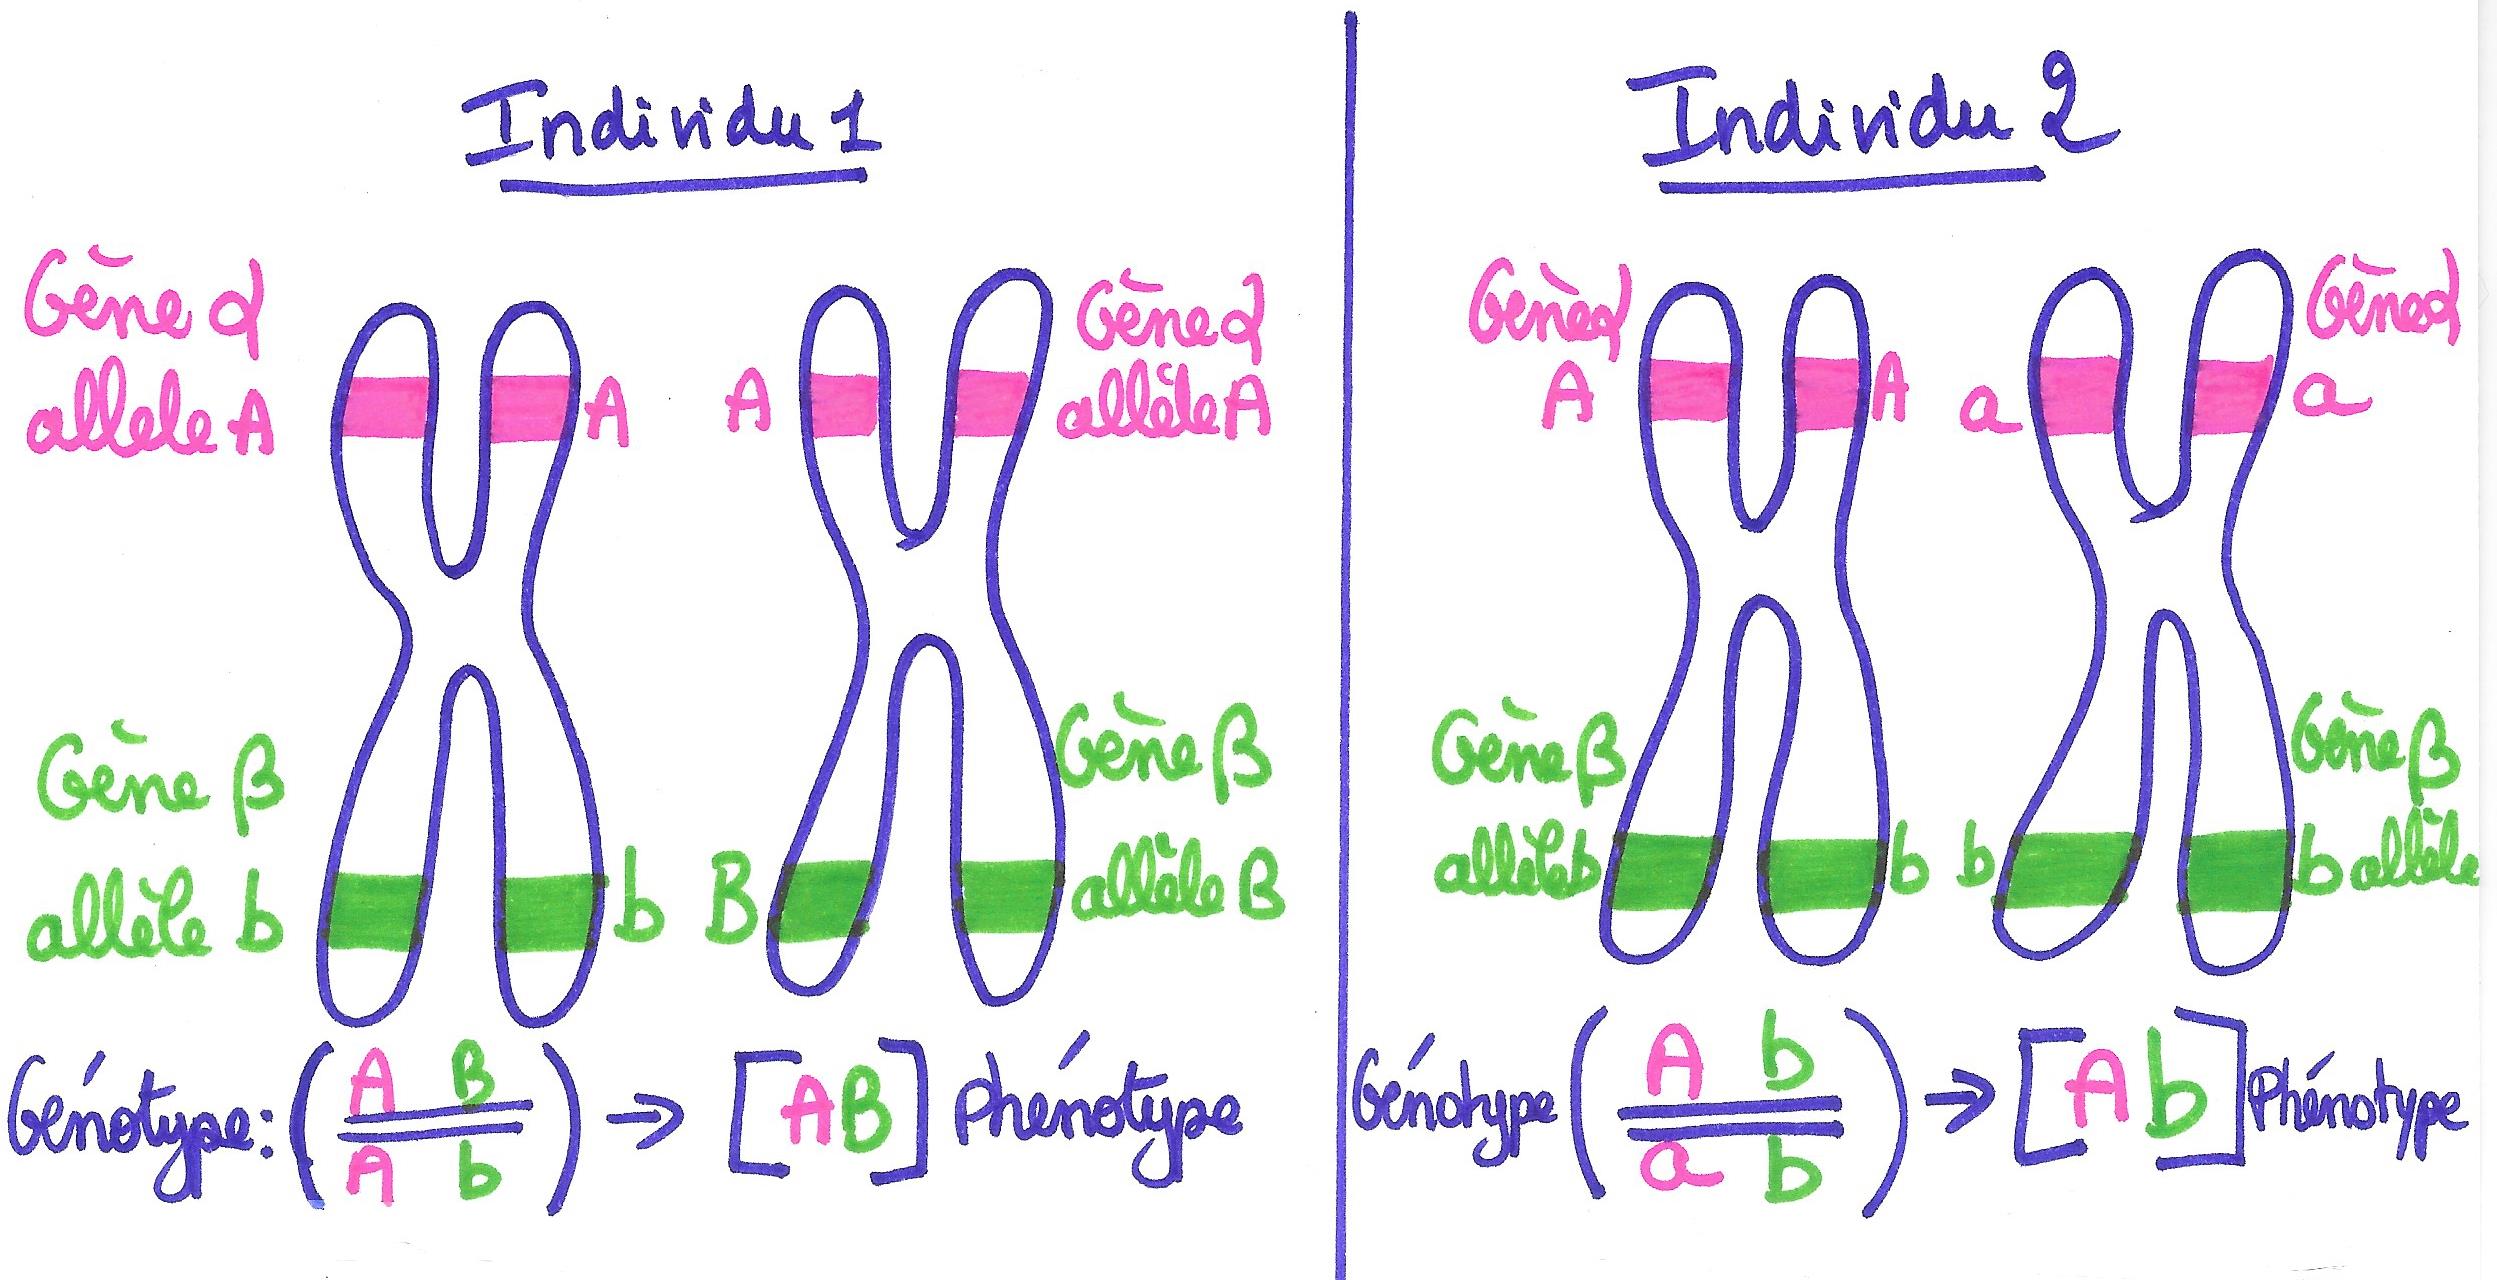 Position des gènes et des allèles chez des individus différents